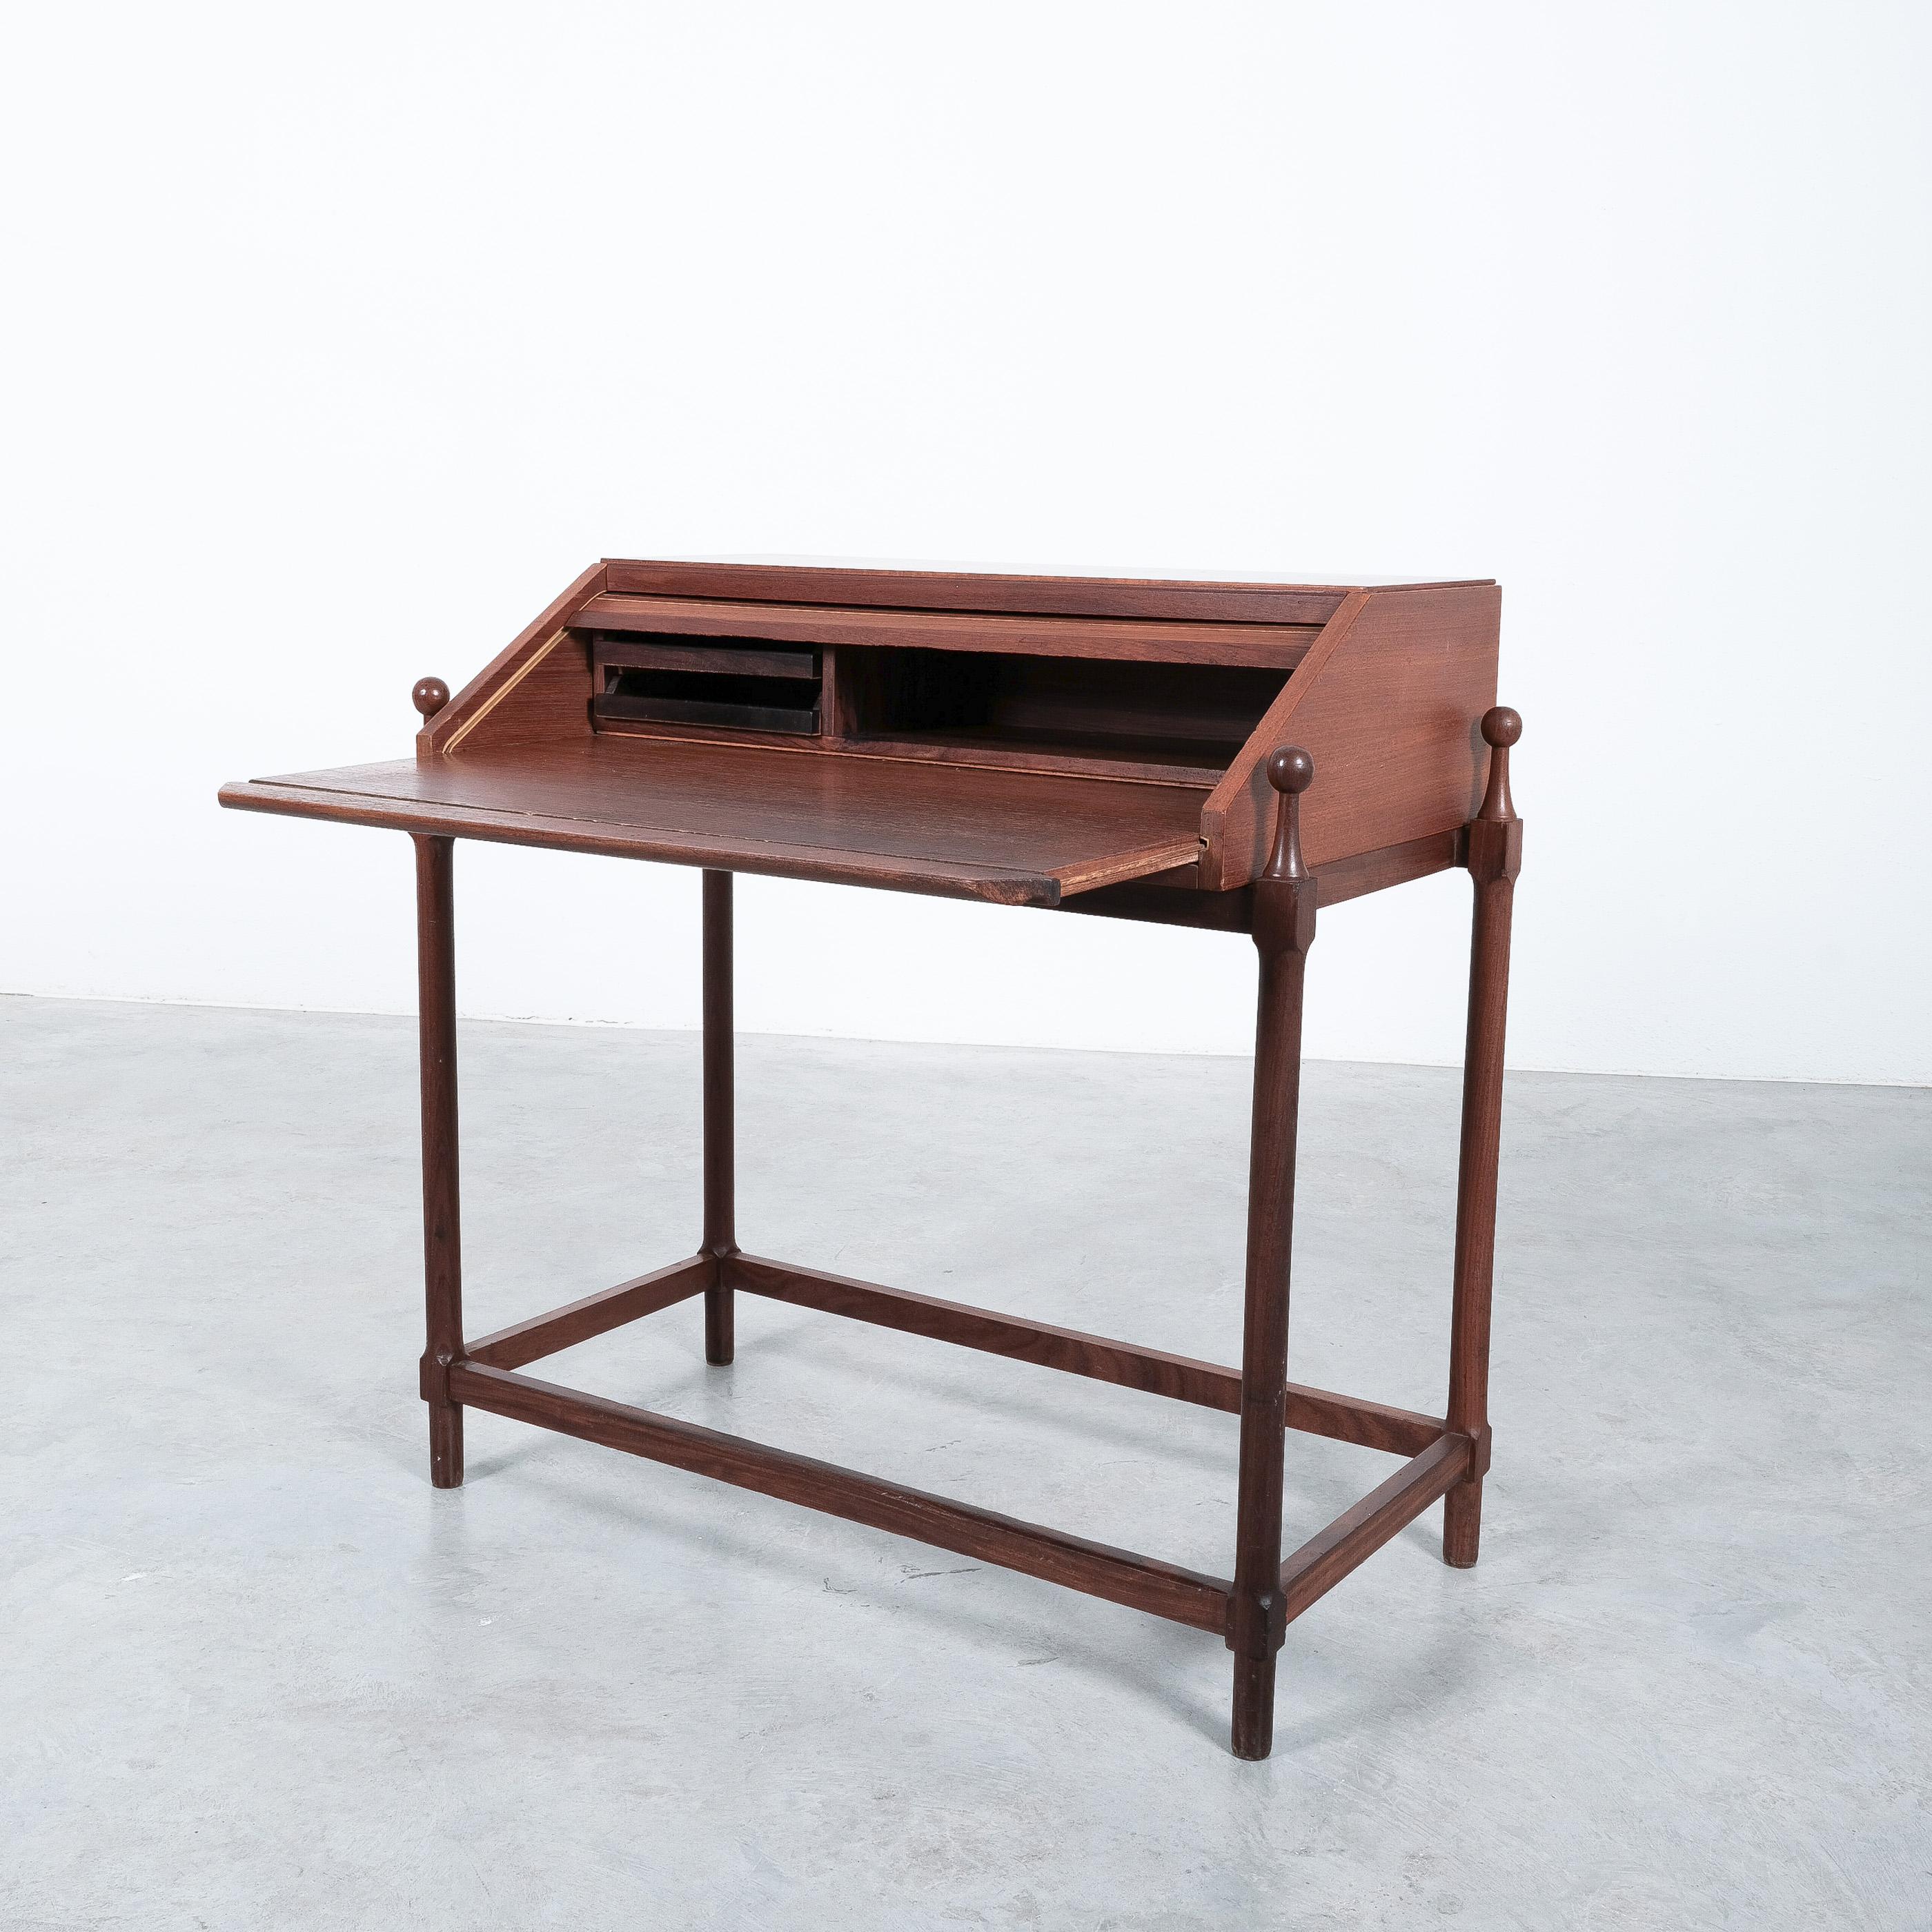 Rollup-Sekretärschreibtisch aus Teakholz von Fratelli Proserpio, Italien 1960er Jahre.

Modernistischer, kompakter Schreibtisch in perfekter Größe und in gutem Vintage-Zustand. Er weist einen einzigartigen Mechanismus auf, der sich öffnet, wenn